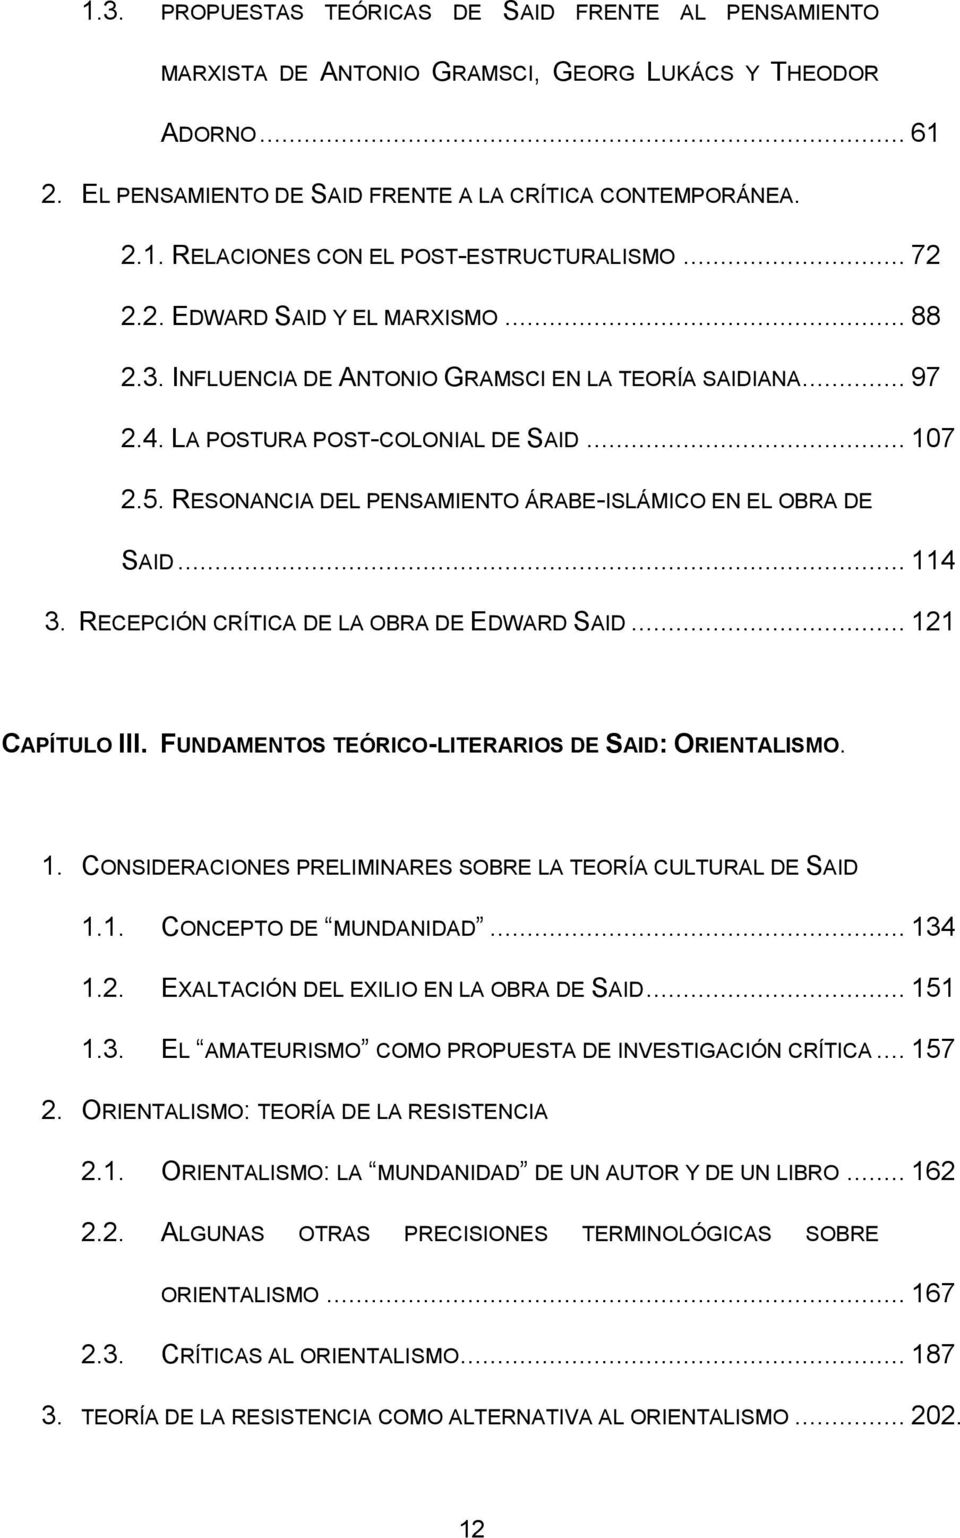 RESONANCIA DEL PENSAMIENTO ÁRABE-ISLÁMICO EN EL OBRA DE SAID... 114 3. RECEPCIÓN CRÍTICA DE LA OBRA DE EDWARD SAID... 121 CAPÍTULO III. FUNDAMENTOS TEÓRICO-LITERARIOS DE SAID: ORIENTALISMO. 1. CONSIDERACIONES PRELIMINARES SOBRE LA TEORÍA CULTURAL DE SAID 1.